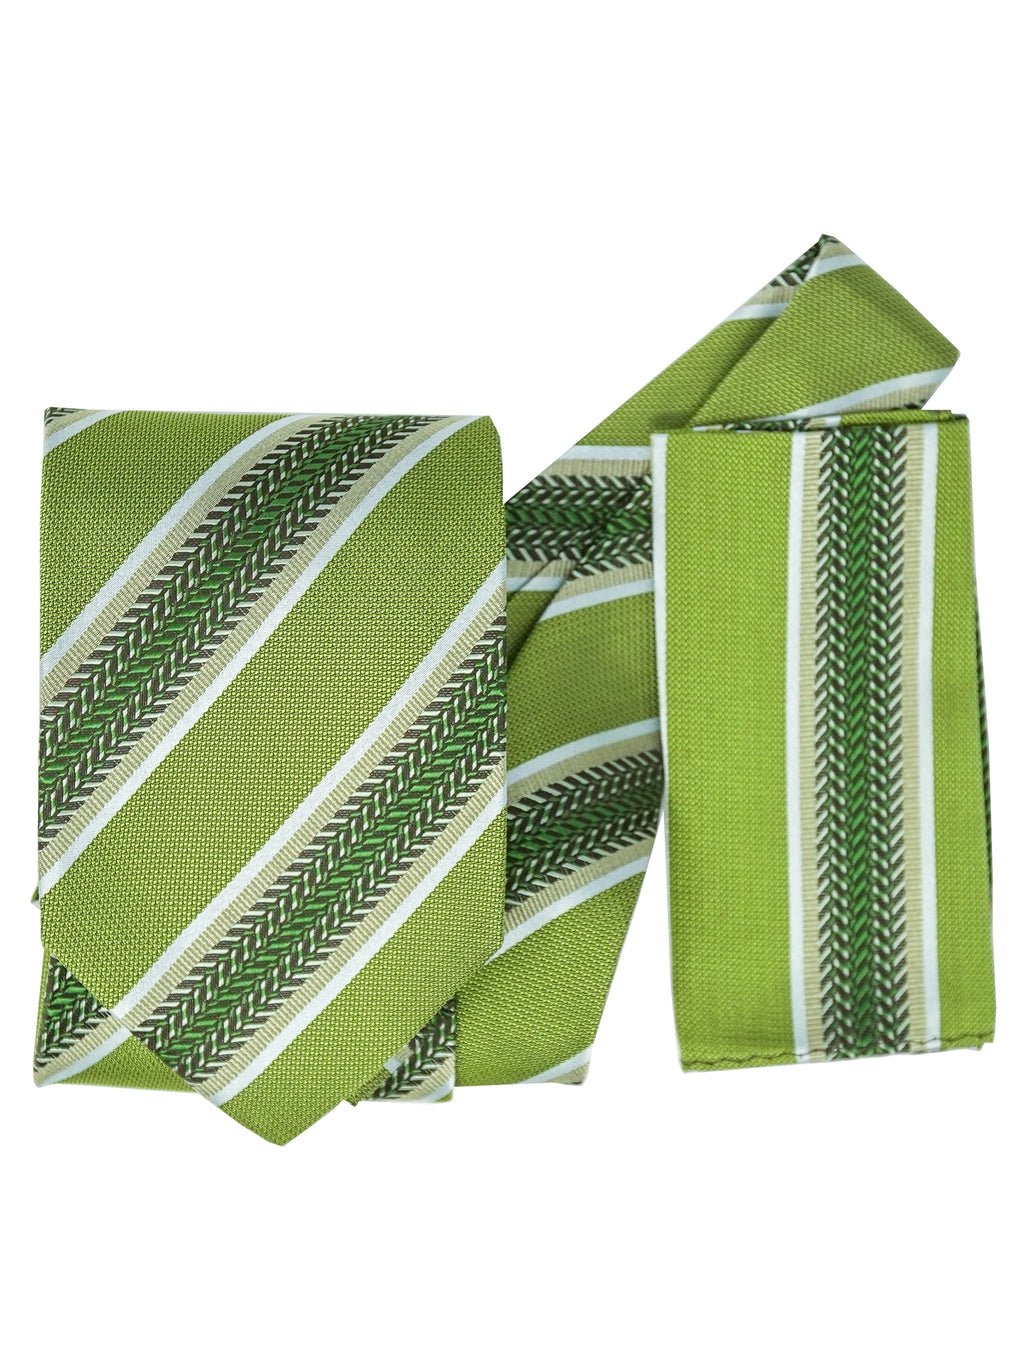 Men's Silk Woven Wedding Neck Tie With Handkerchief Neck Tie TheDapperTie Green Stripe 1 Regular 